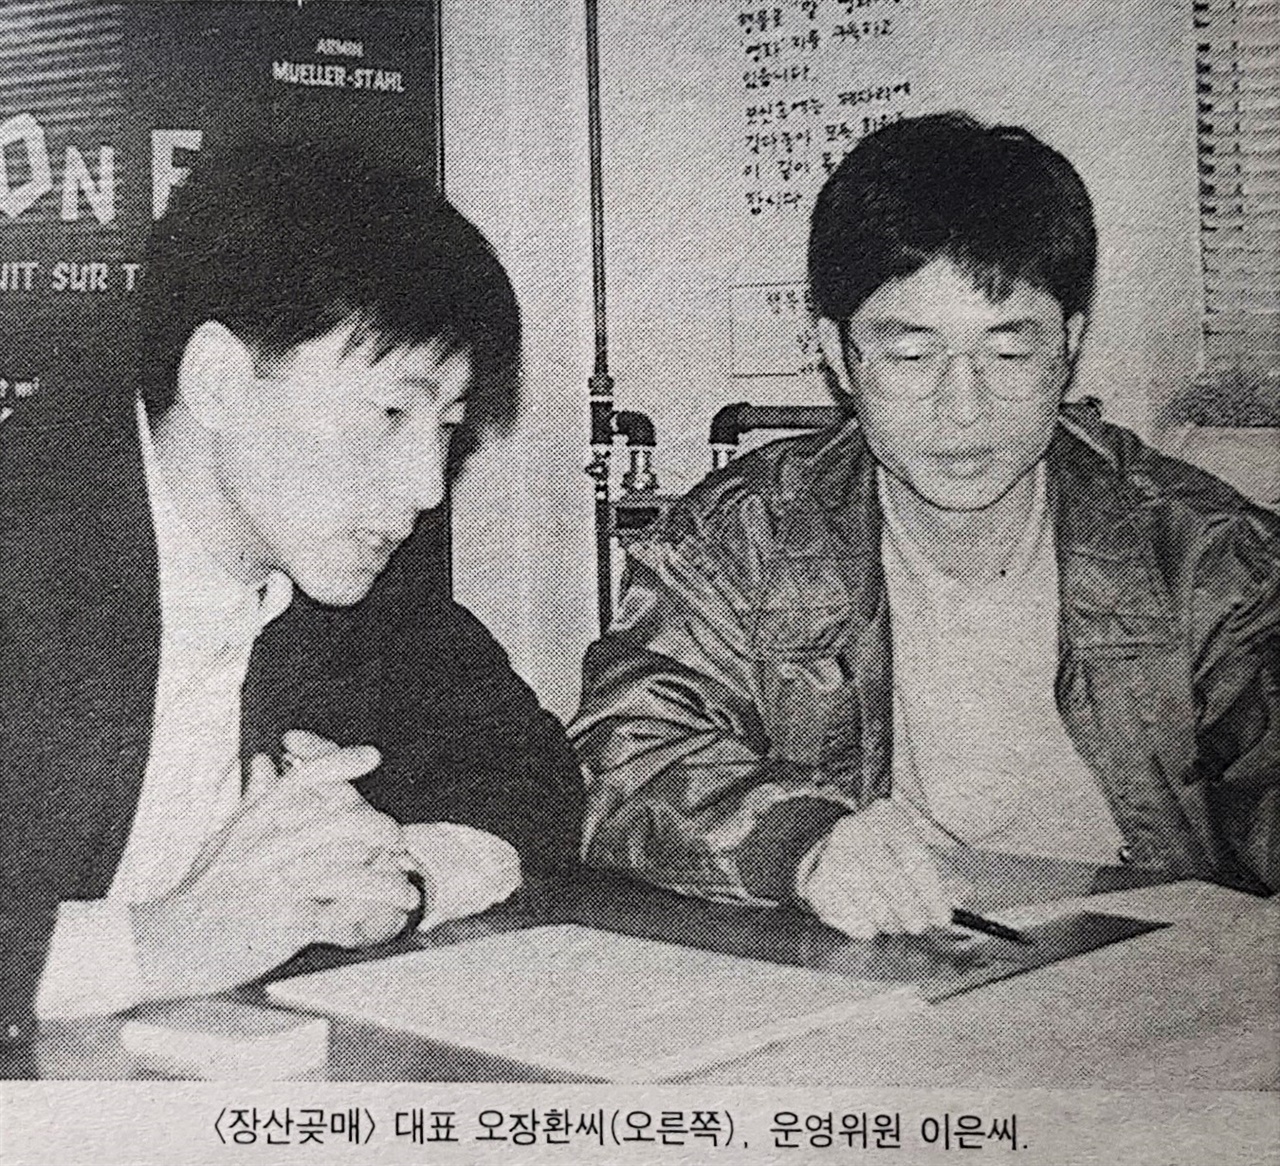  1993년 3월 31일 발행 <영화저널>에 나온 이은과 오창환